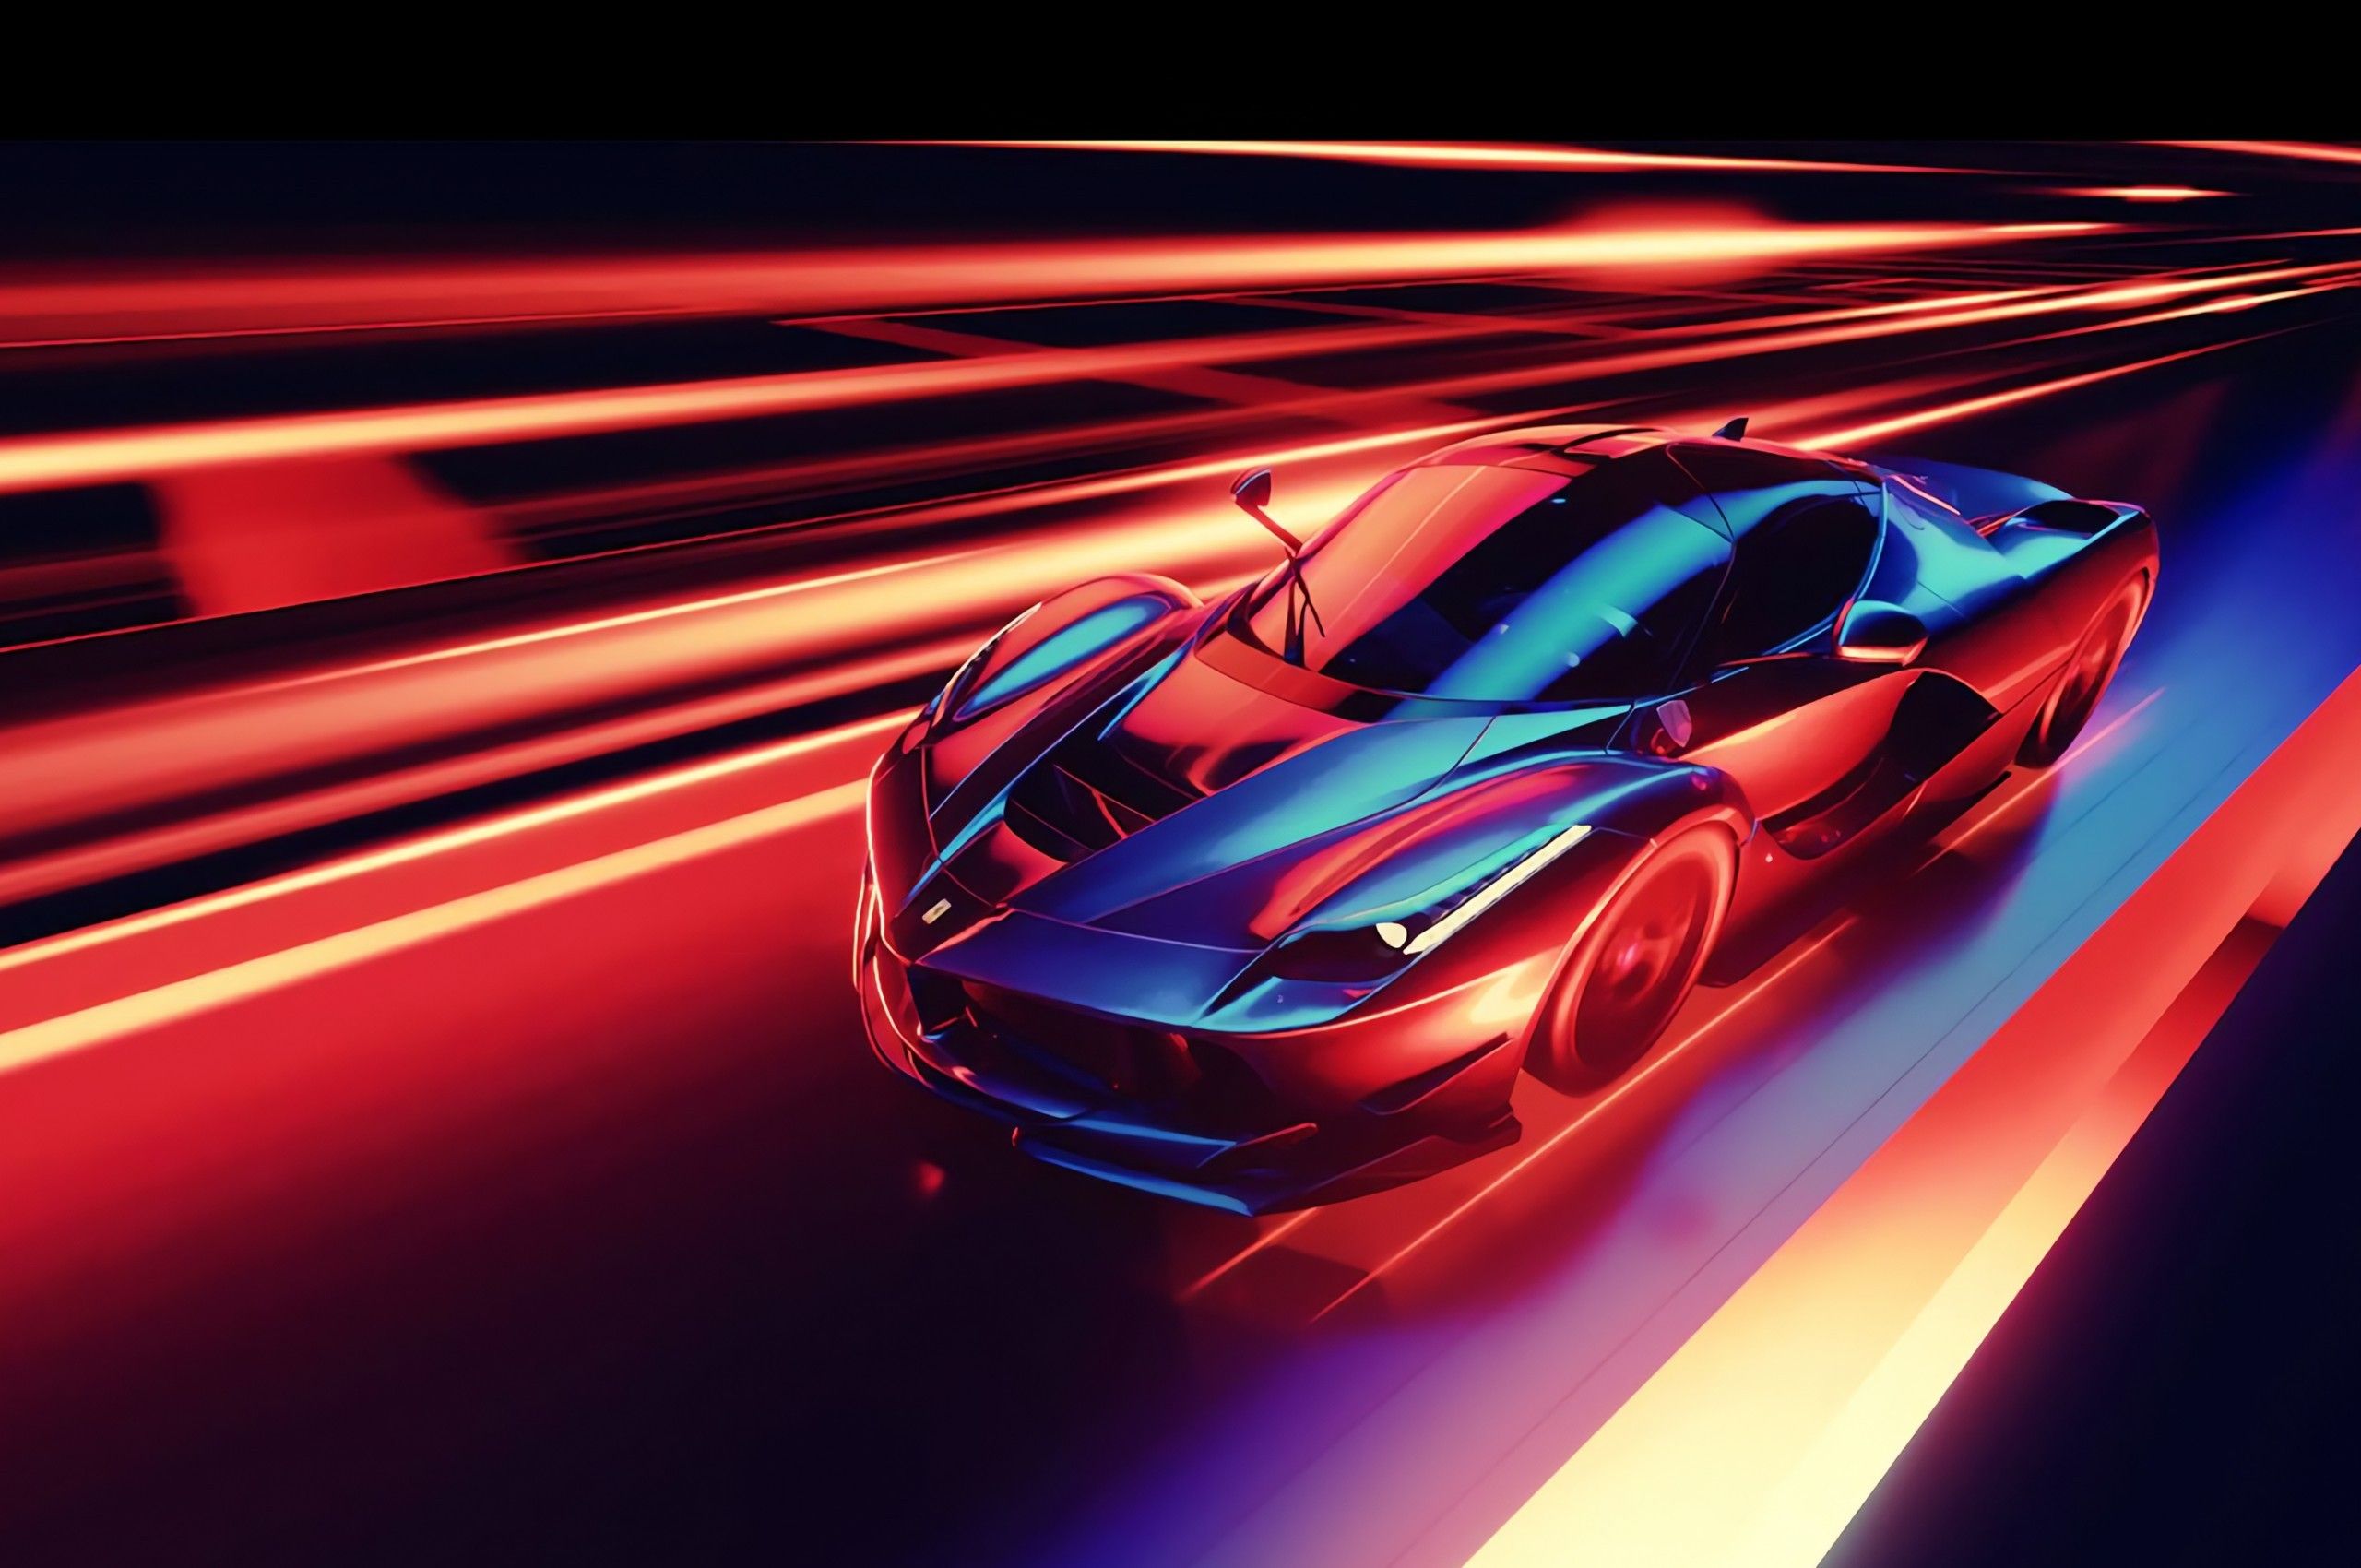 Neon Racing Wallpapers - Top Những Hình Ảnh Đẹp